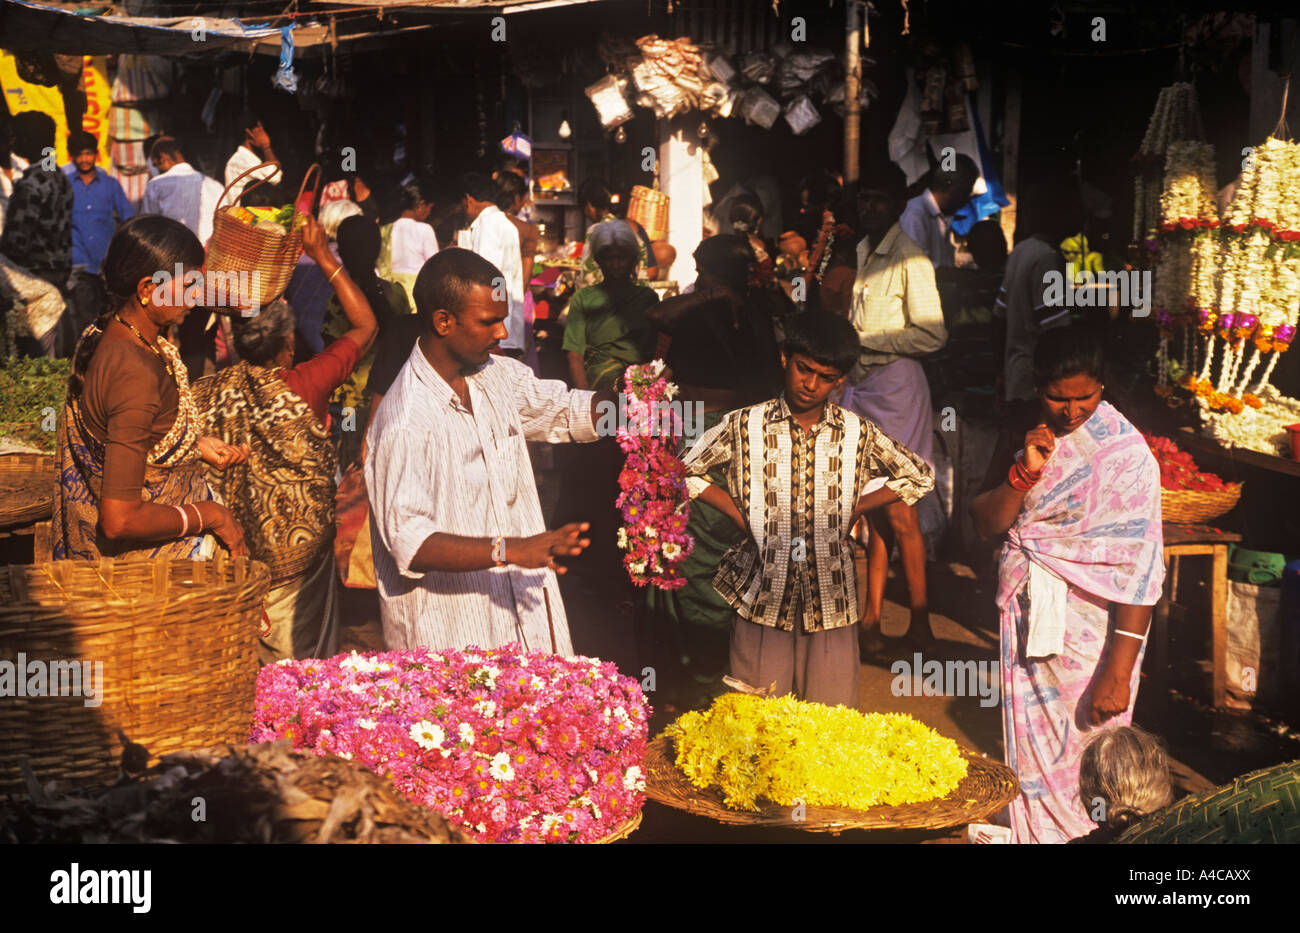 L'homme vend des guirlandes de fleurs Devaraja Market Mysore, Karnataka, Inde Banque D'Images